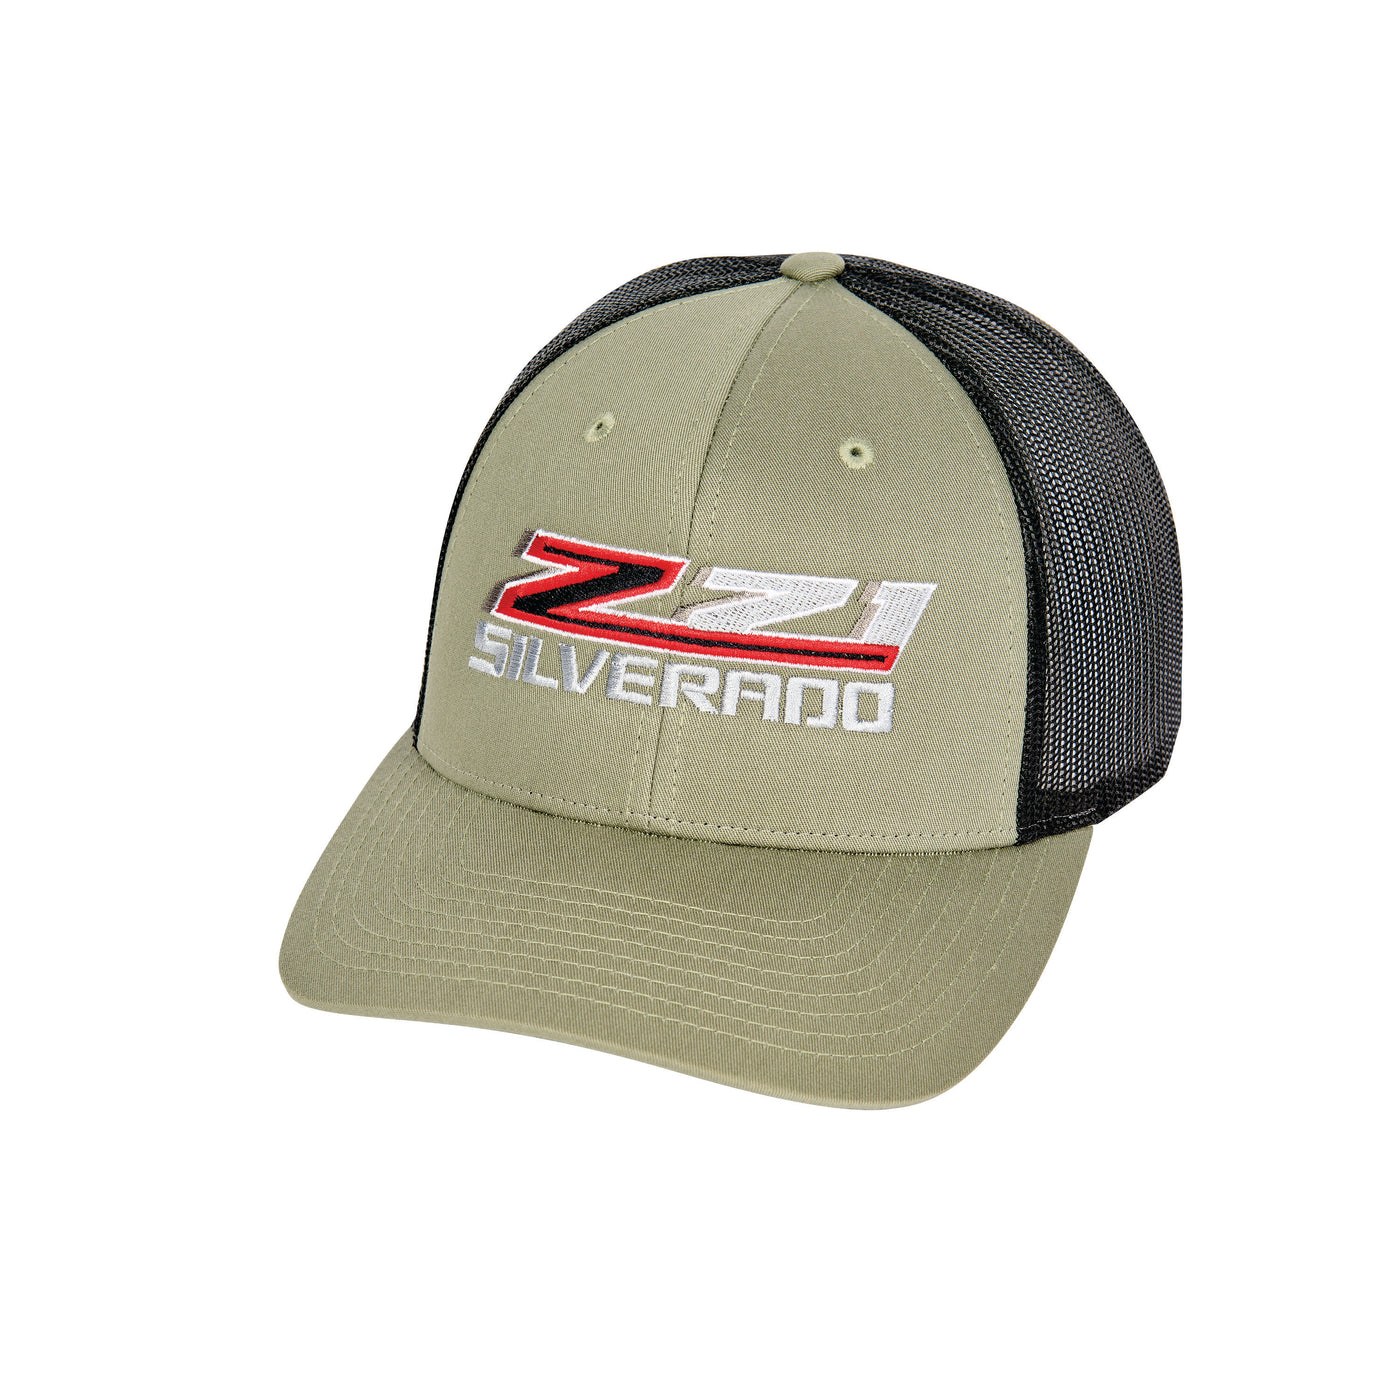 Z71 Silverado Trucker Hat